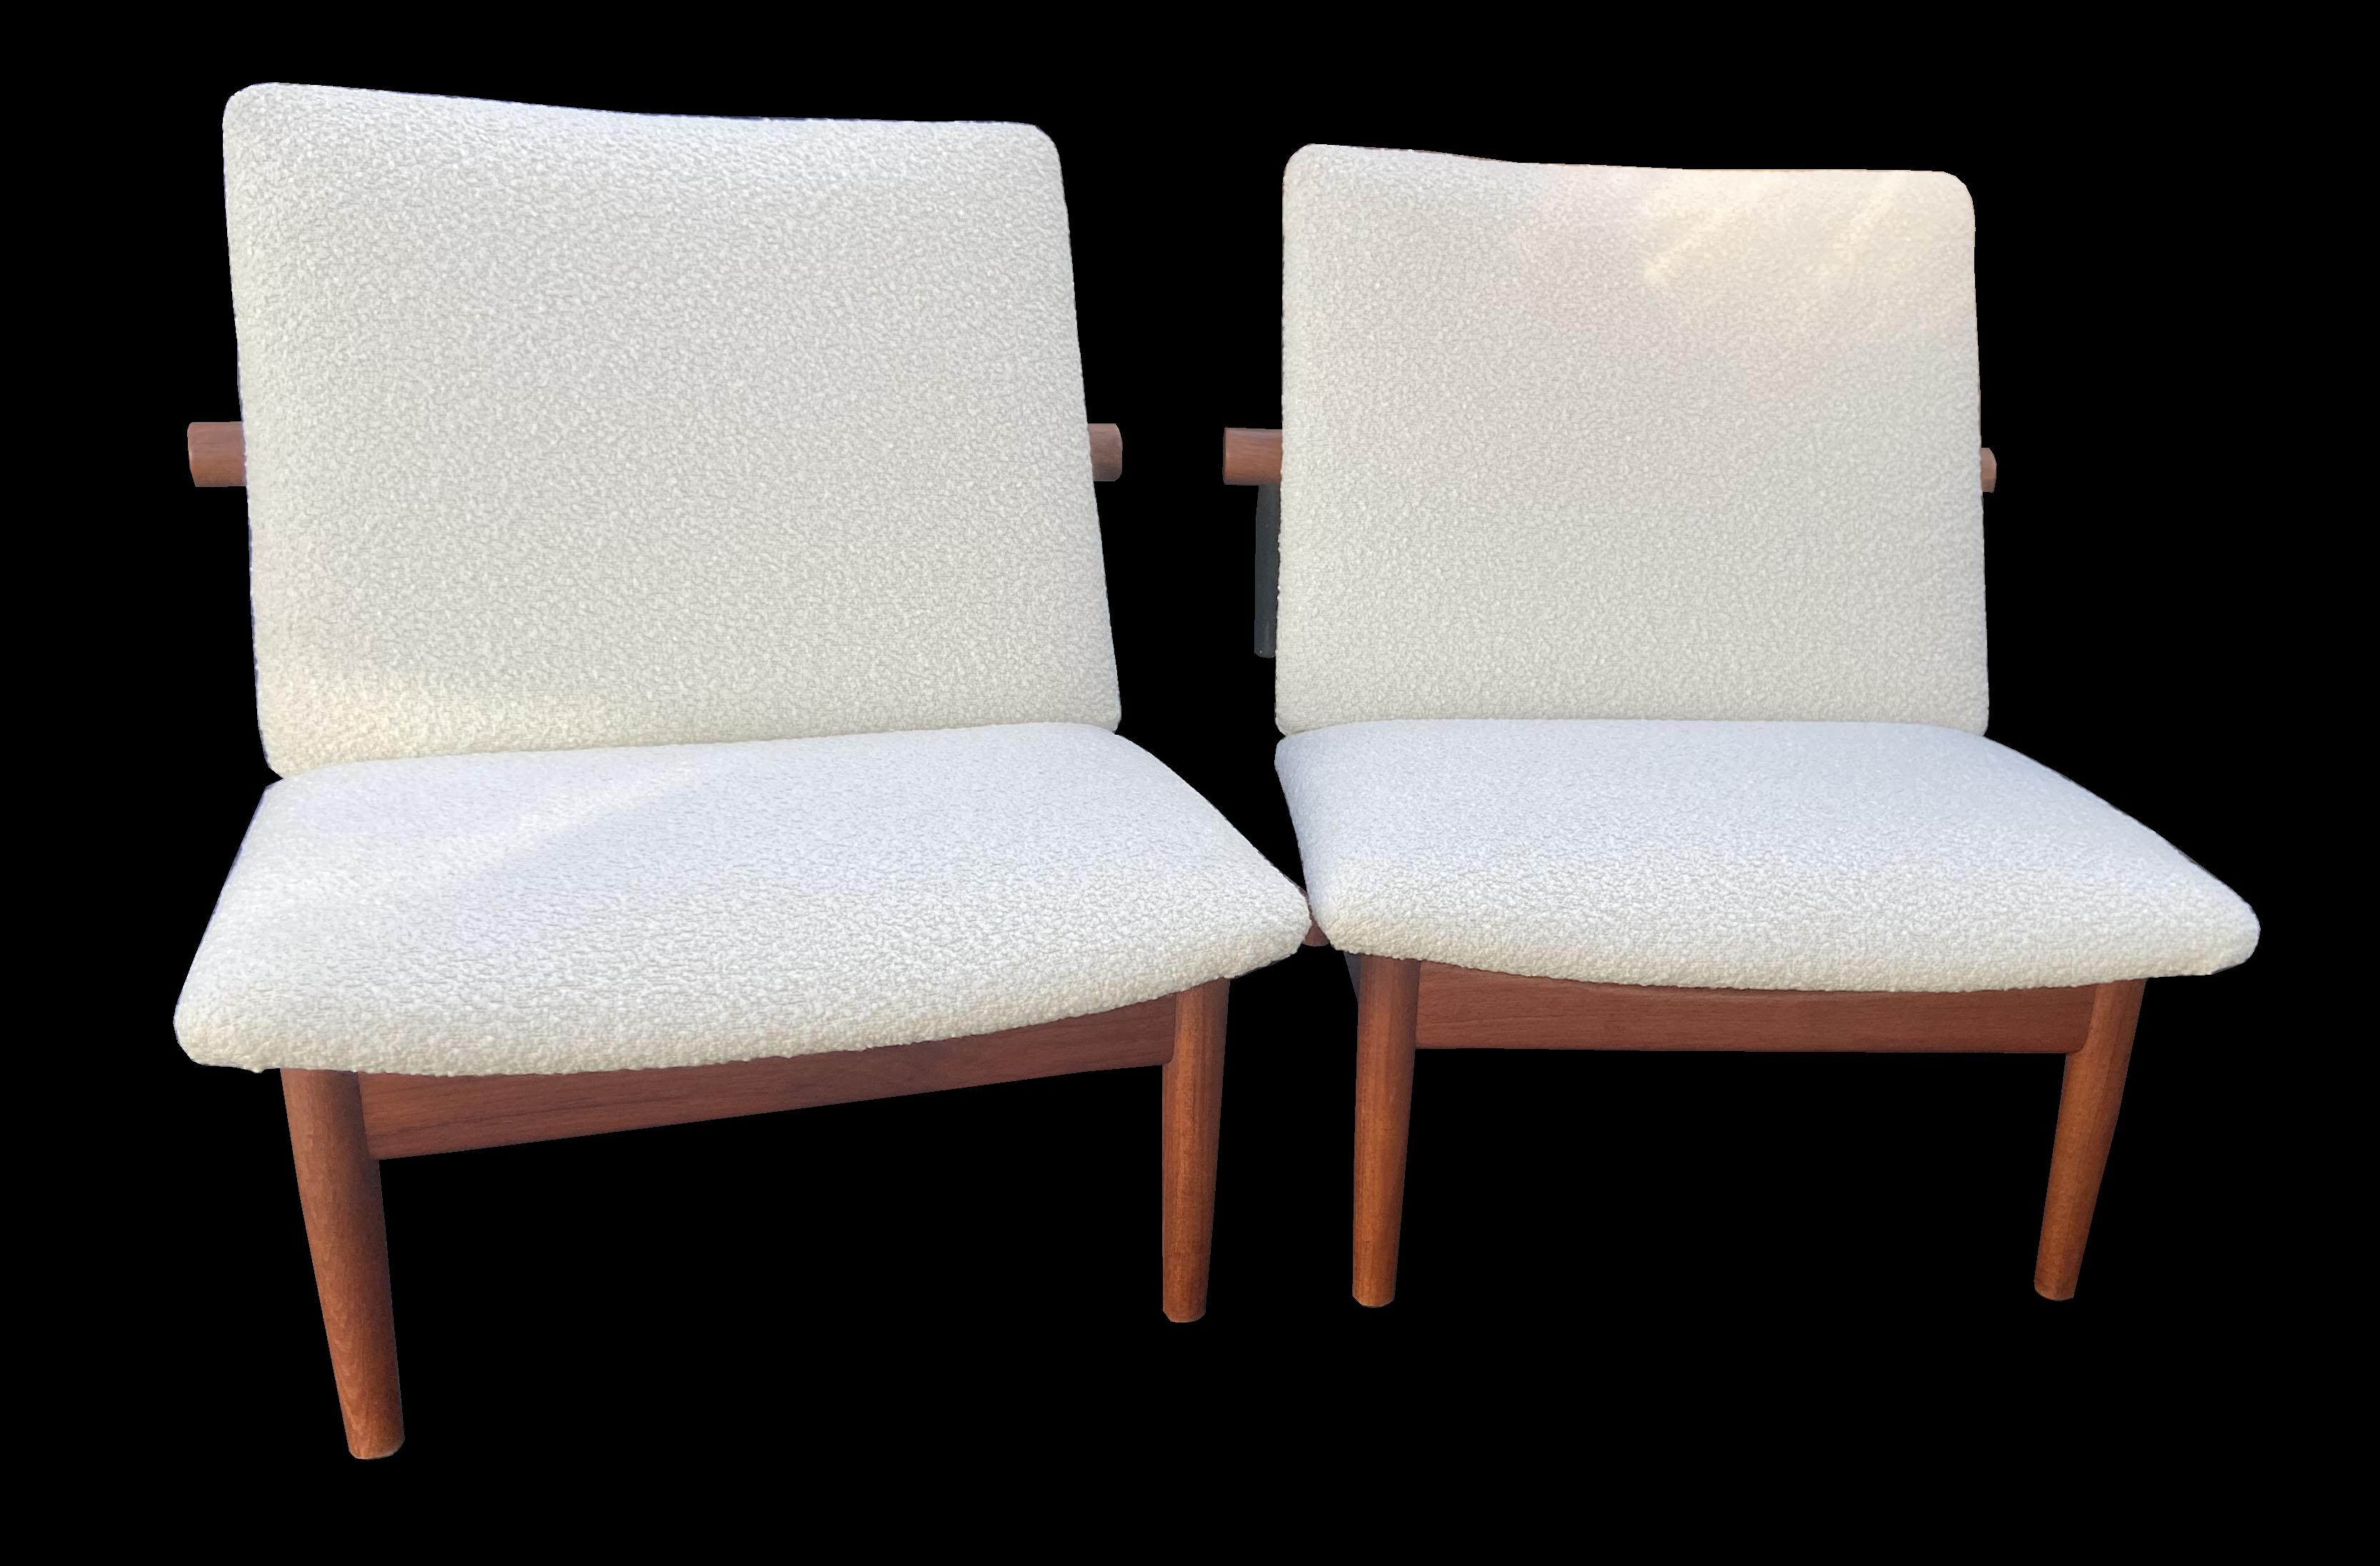 Il s'agit de magnifiques chaises originales de marque Finn Juhl datant du début des années 1960.
Conçue à l'origine dans les années 1950, cette paire de lunettes porte l'insigne métallique France & Son et, pour être sûr, l'insigne est également